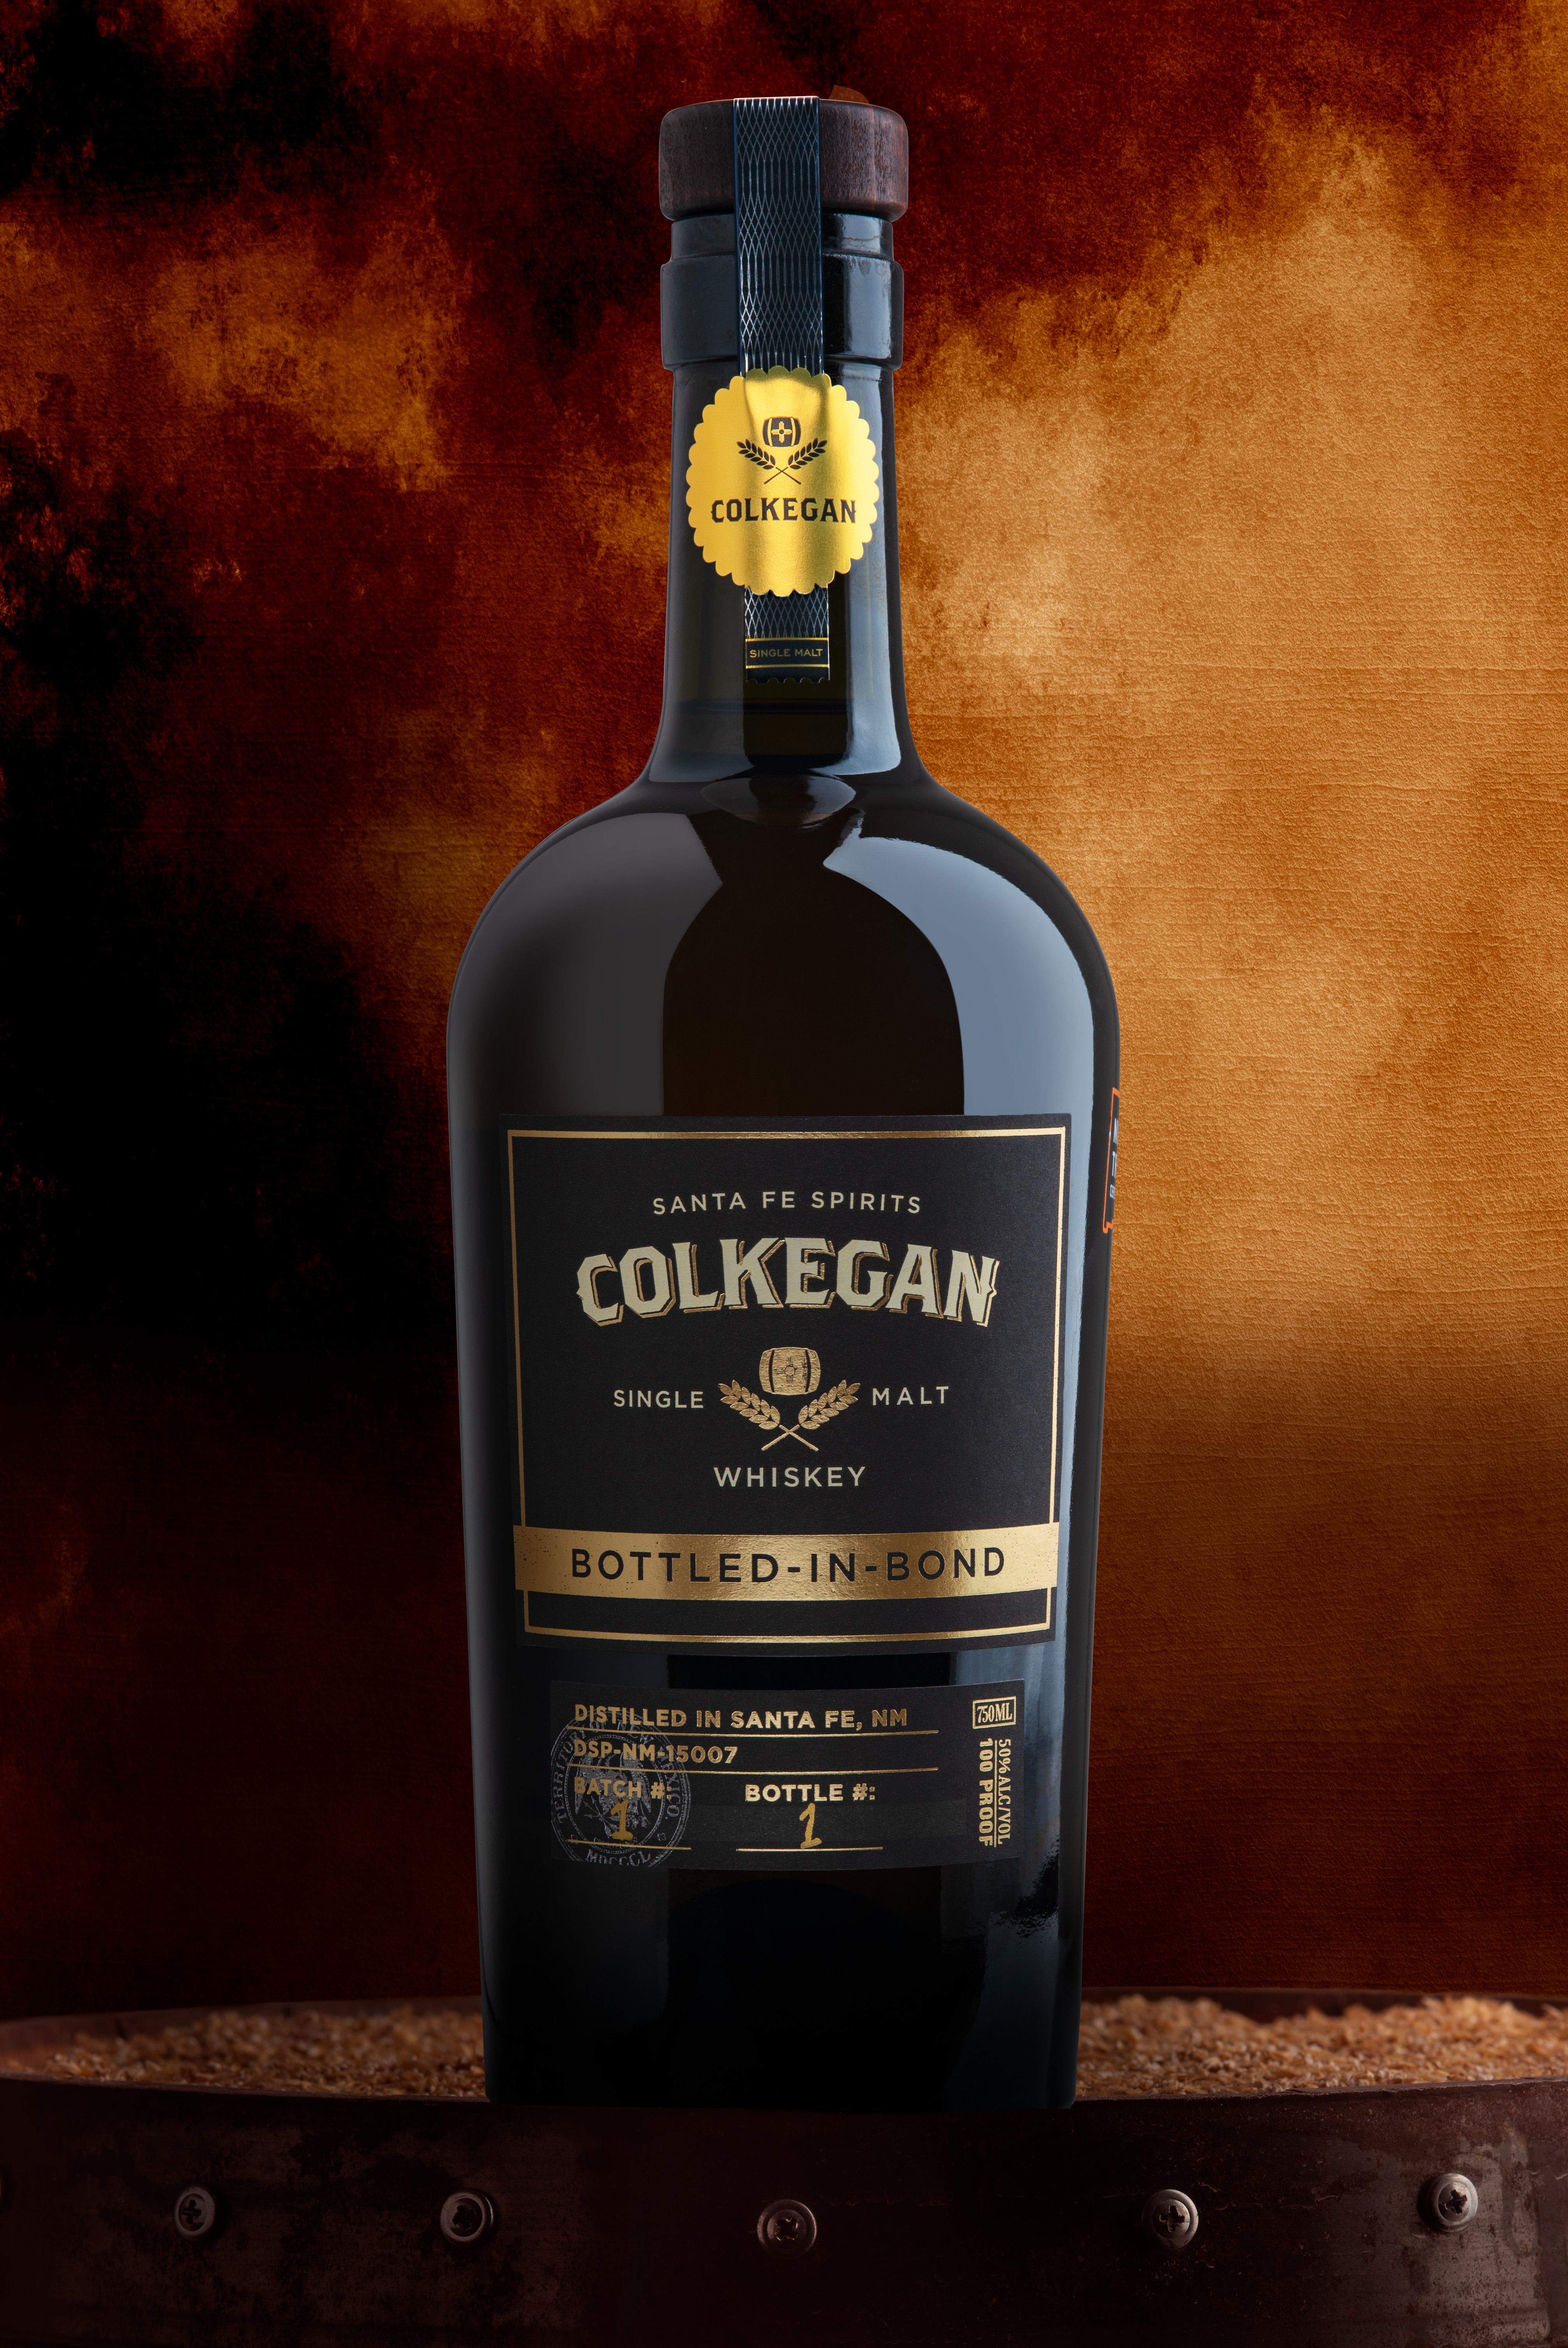 Colkegan’s New Bottled in Bond Single Malt Whiskey Announced